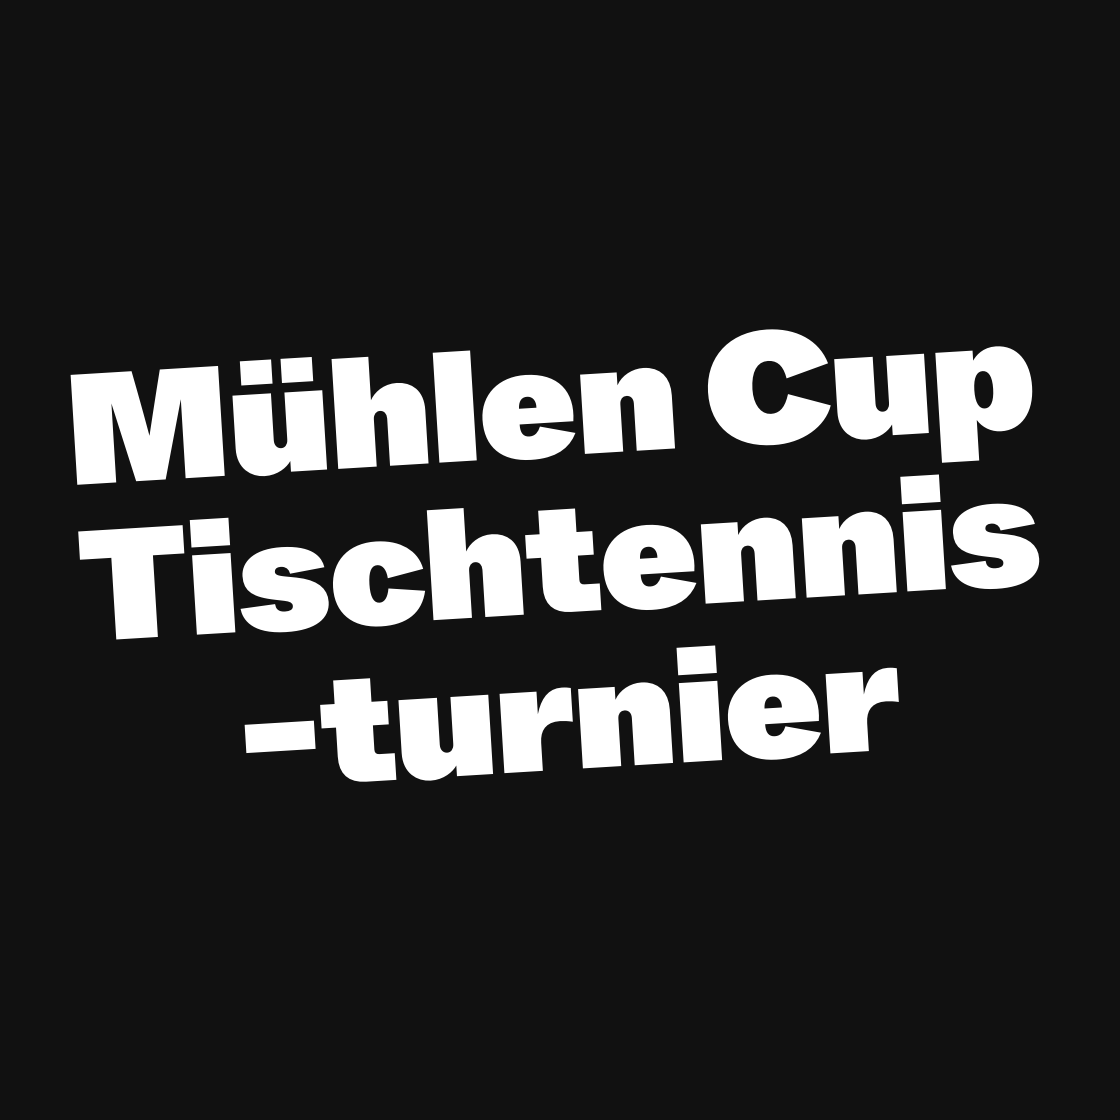 Mühlen Cup Tischtennis- turnier